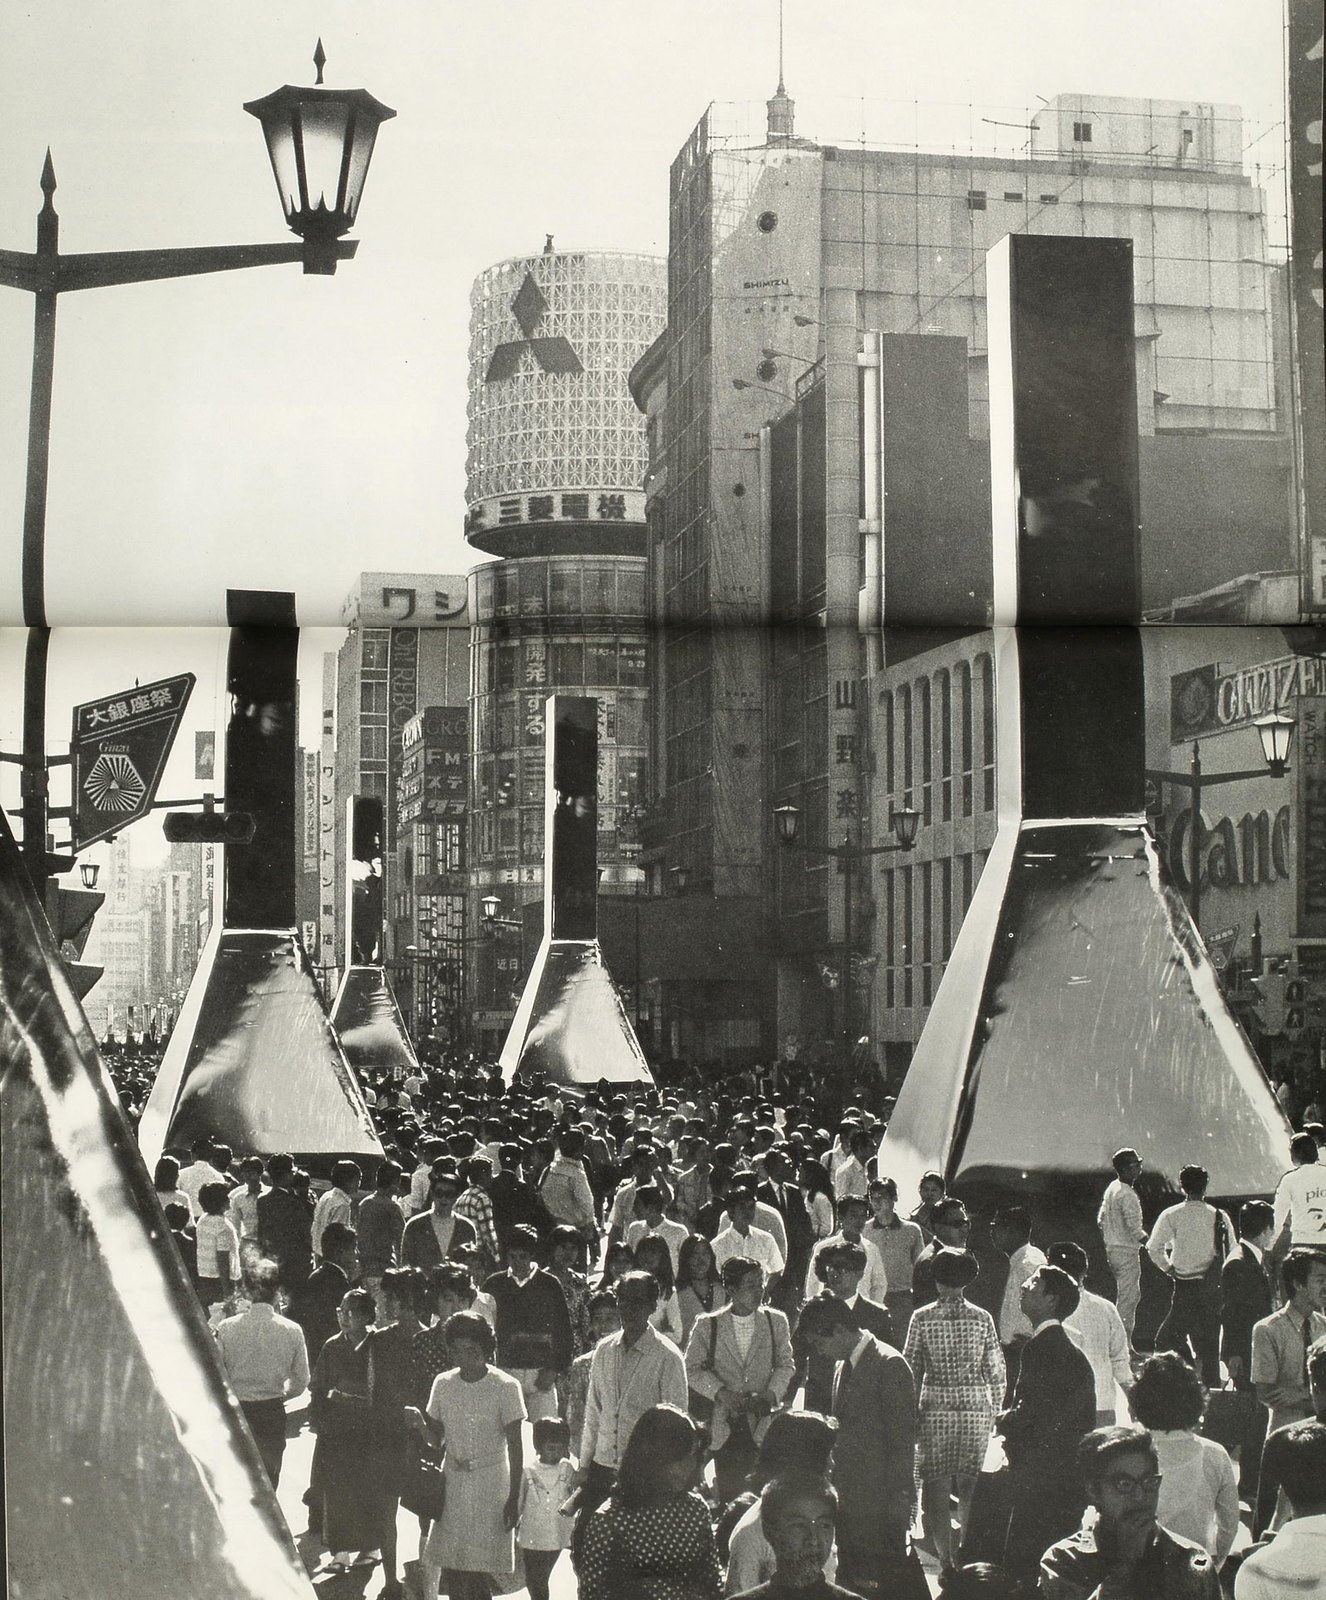 Тоё Ито. URBOT-003. Жилые капсулы, заполняющие пустые участки Токио. 1971. Фото: Ютака Судзуки. Предоставлено Toyo Ito &amp; Associates, Architects